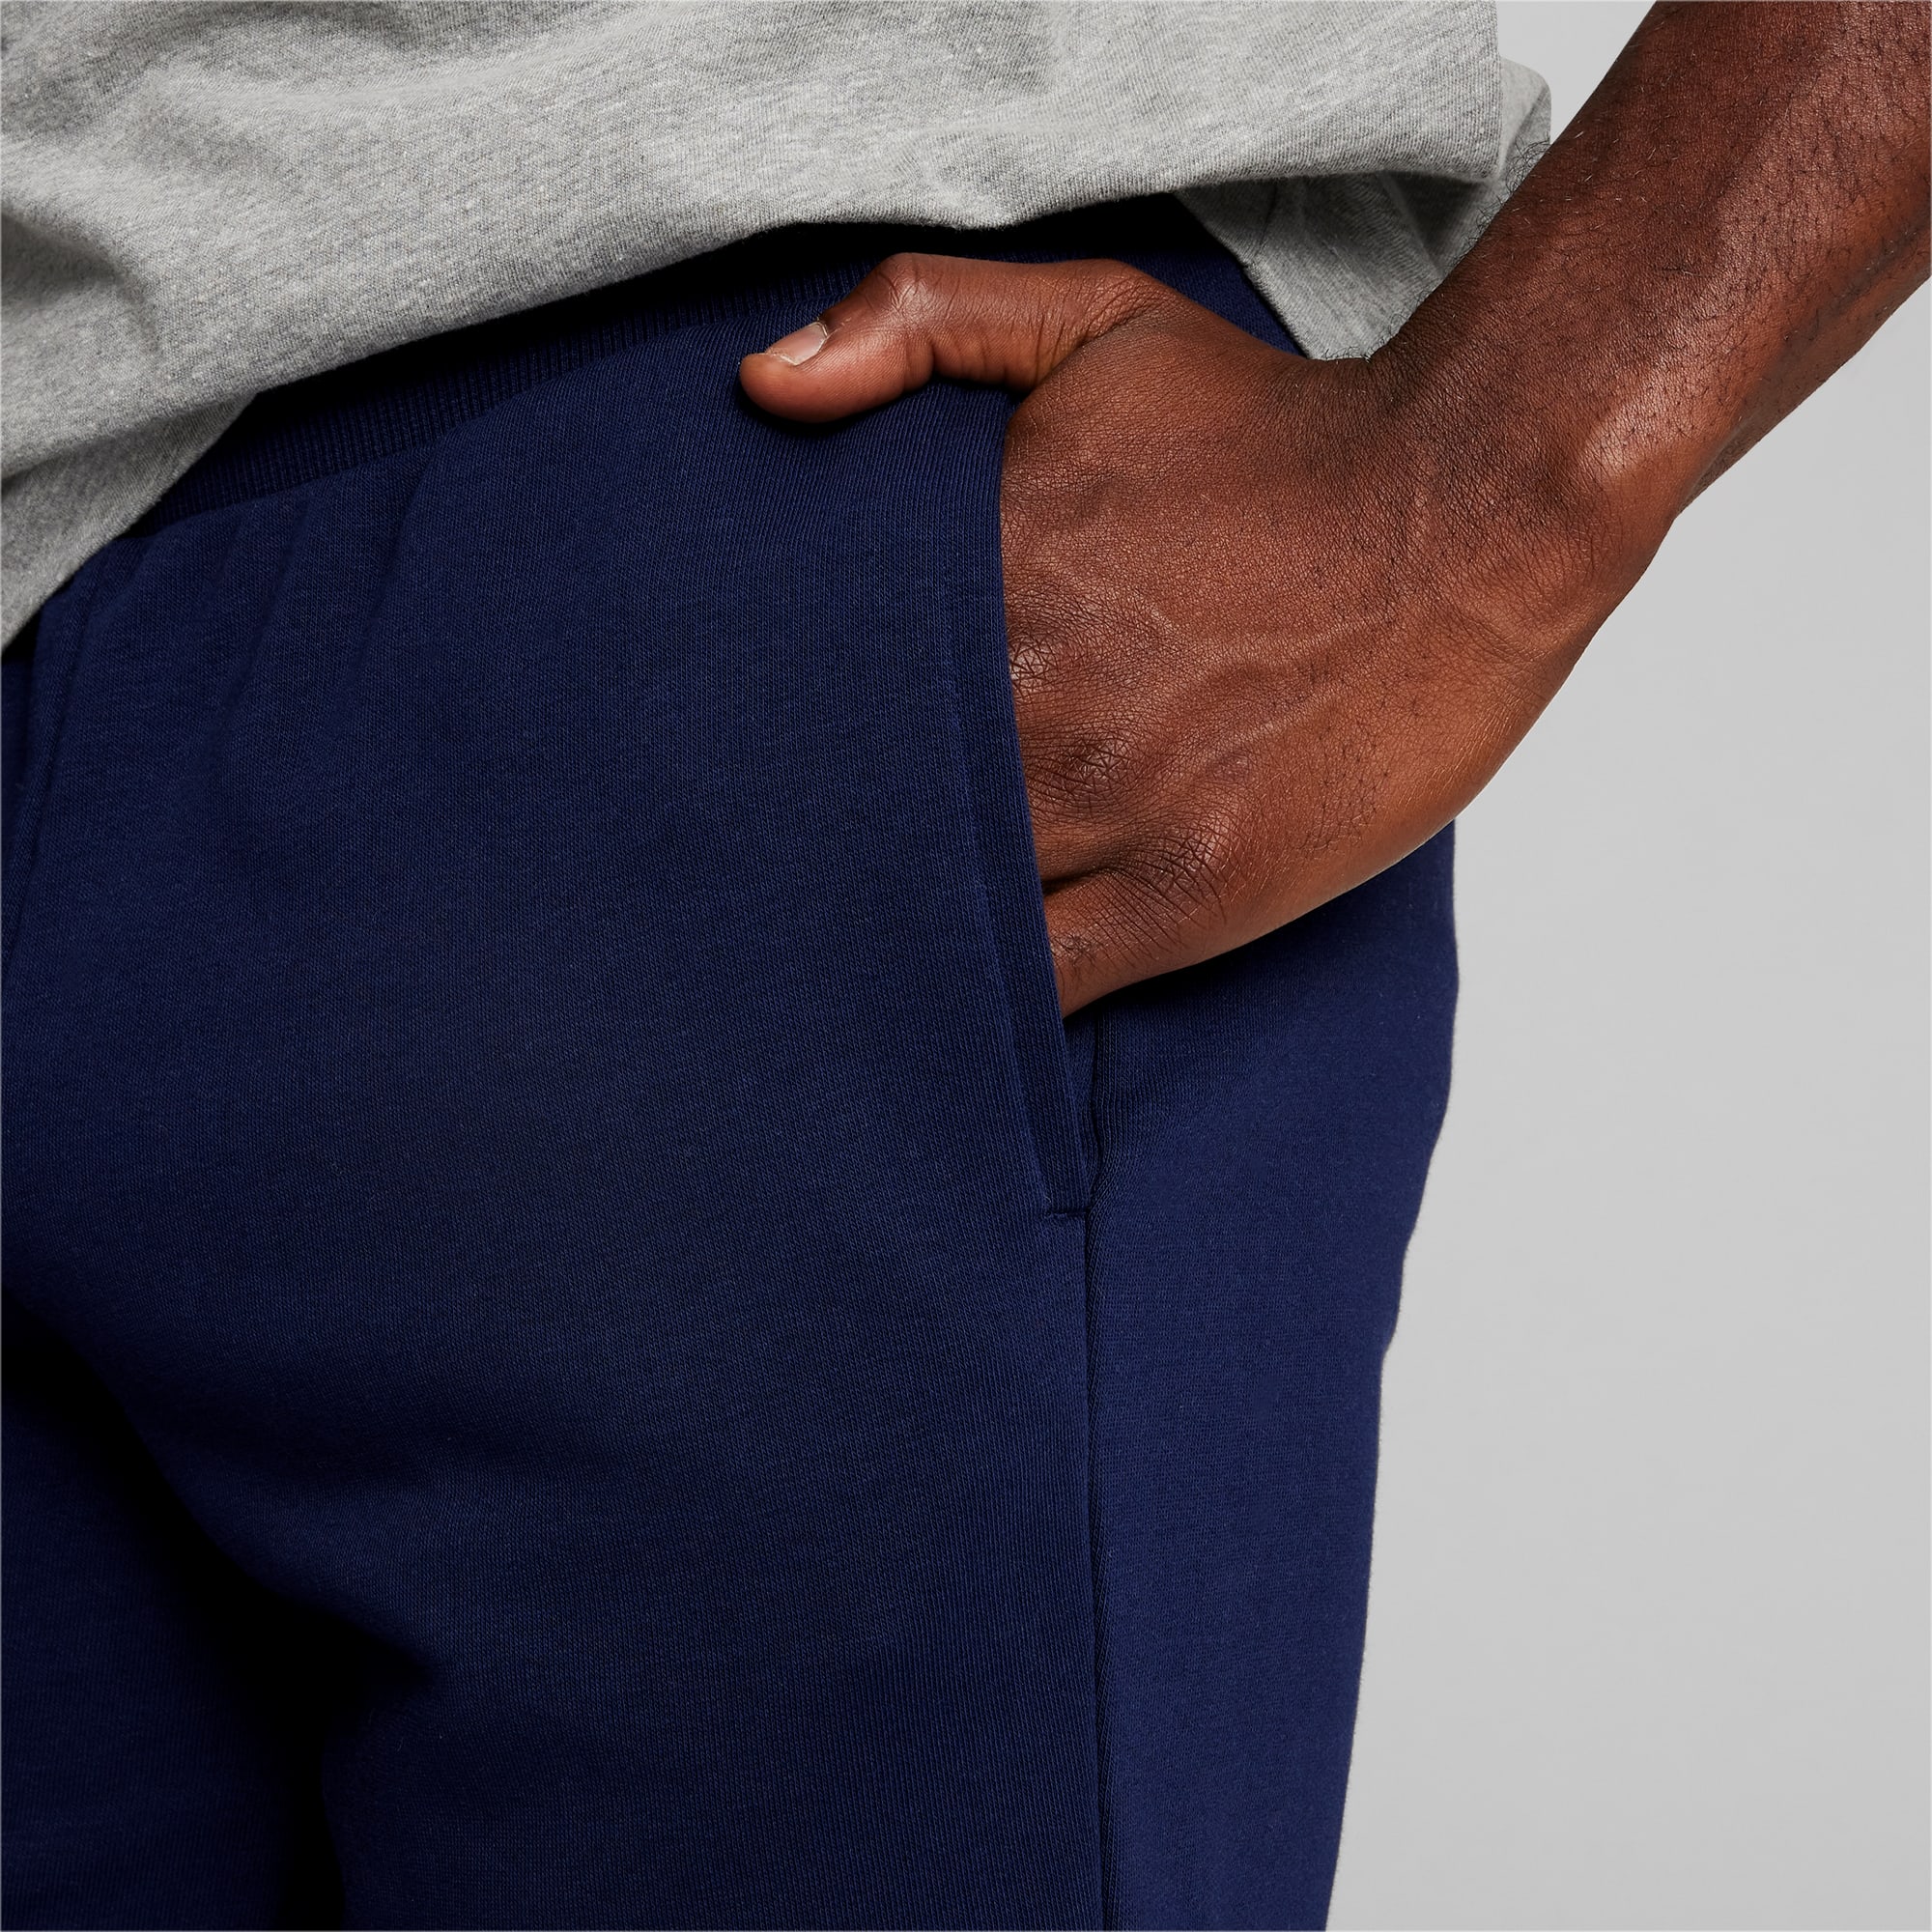 Essentials Men\'s Shorts | PUMA